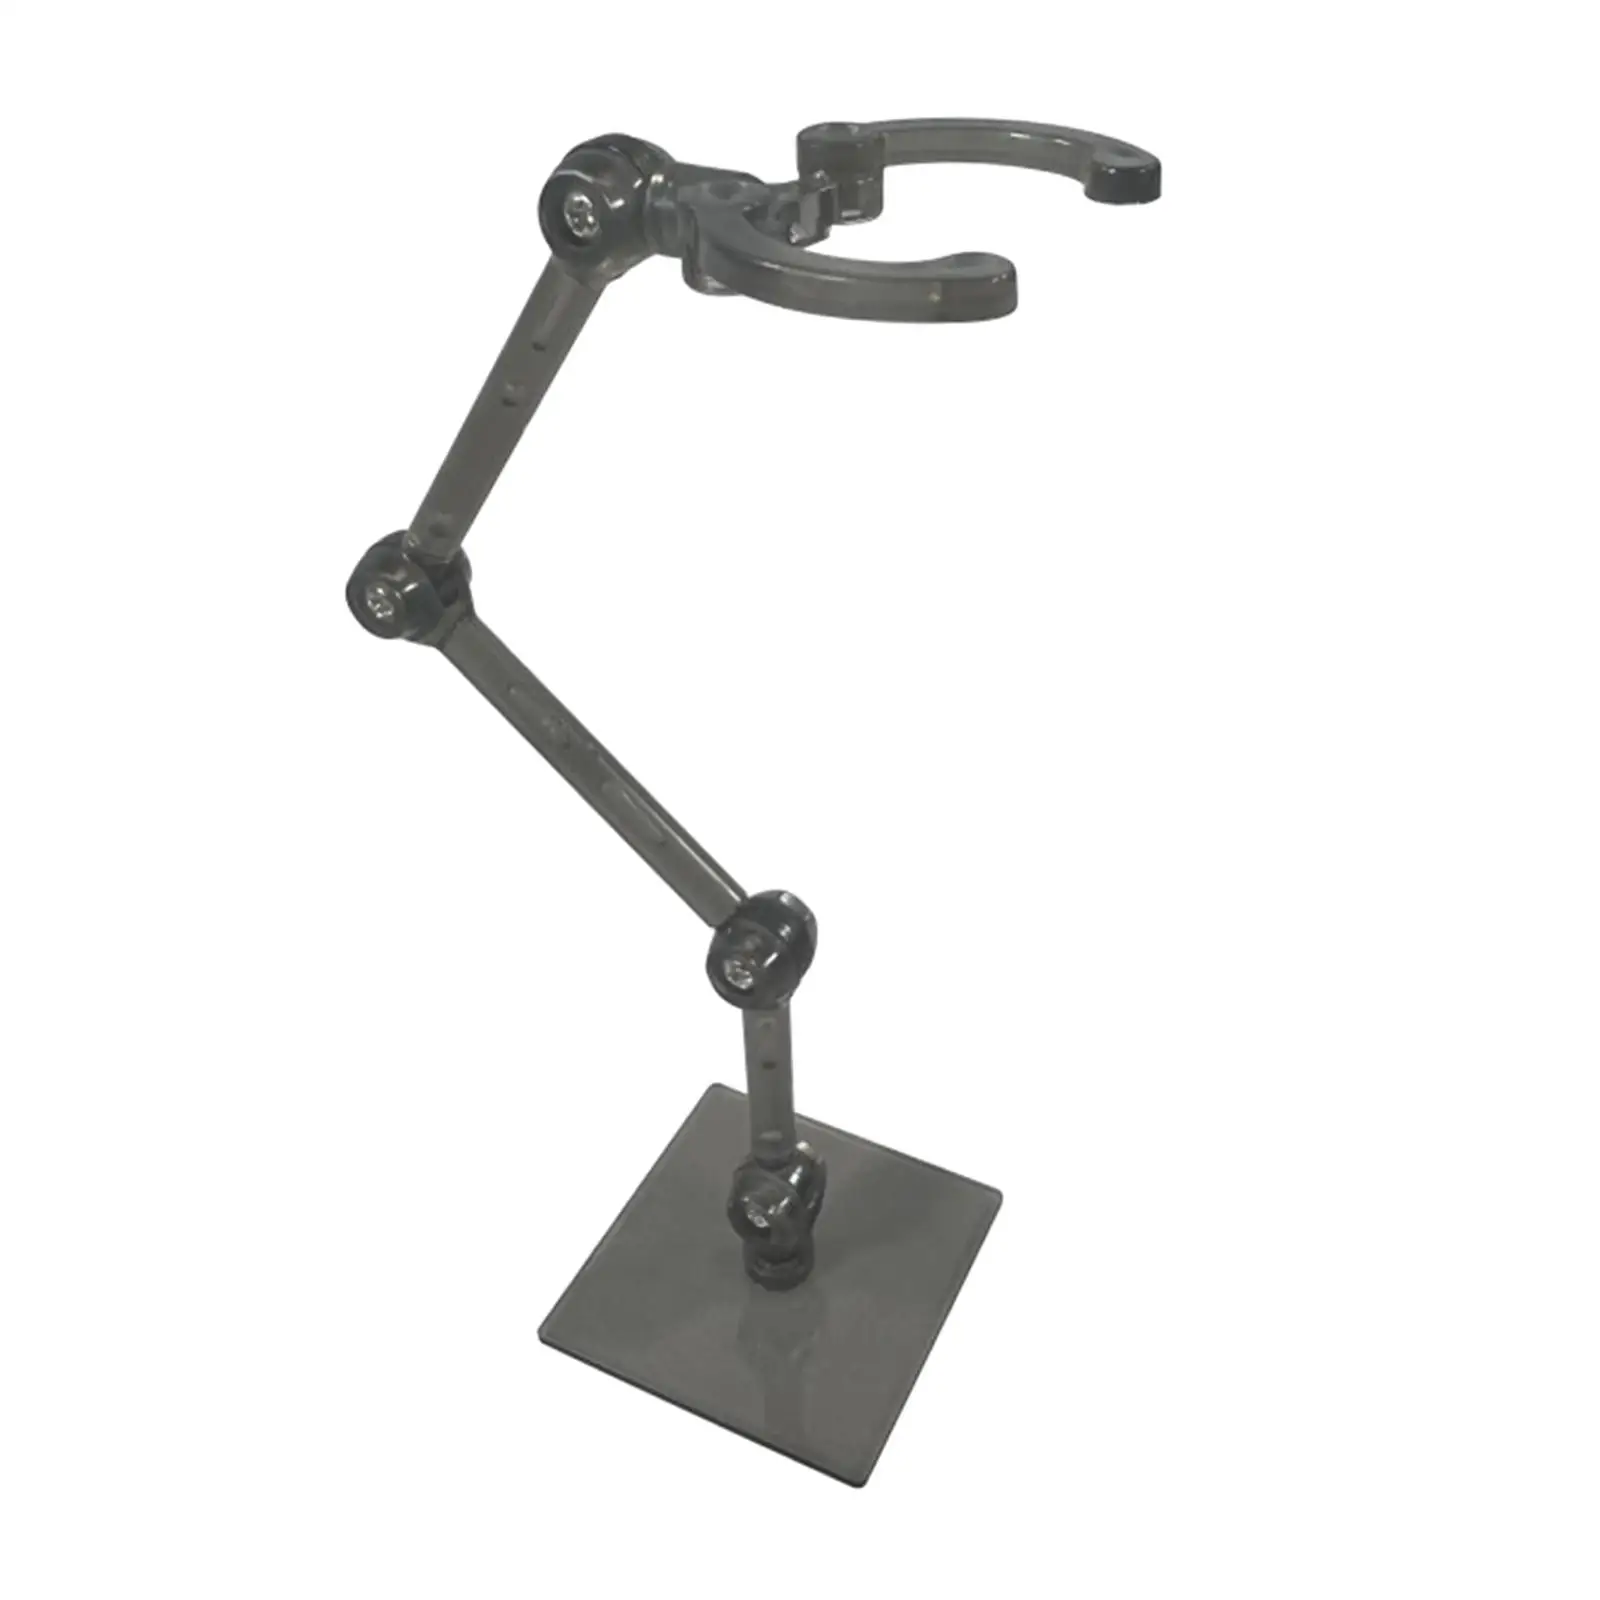  Flexible Rack Support Holder Adjustable Doll Model Bracket for Mini Model Figure Decor Crafts